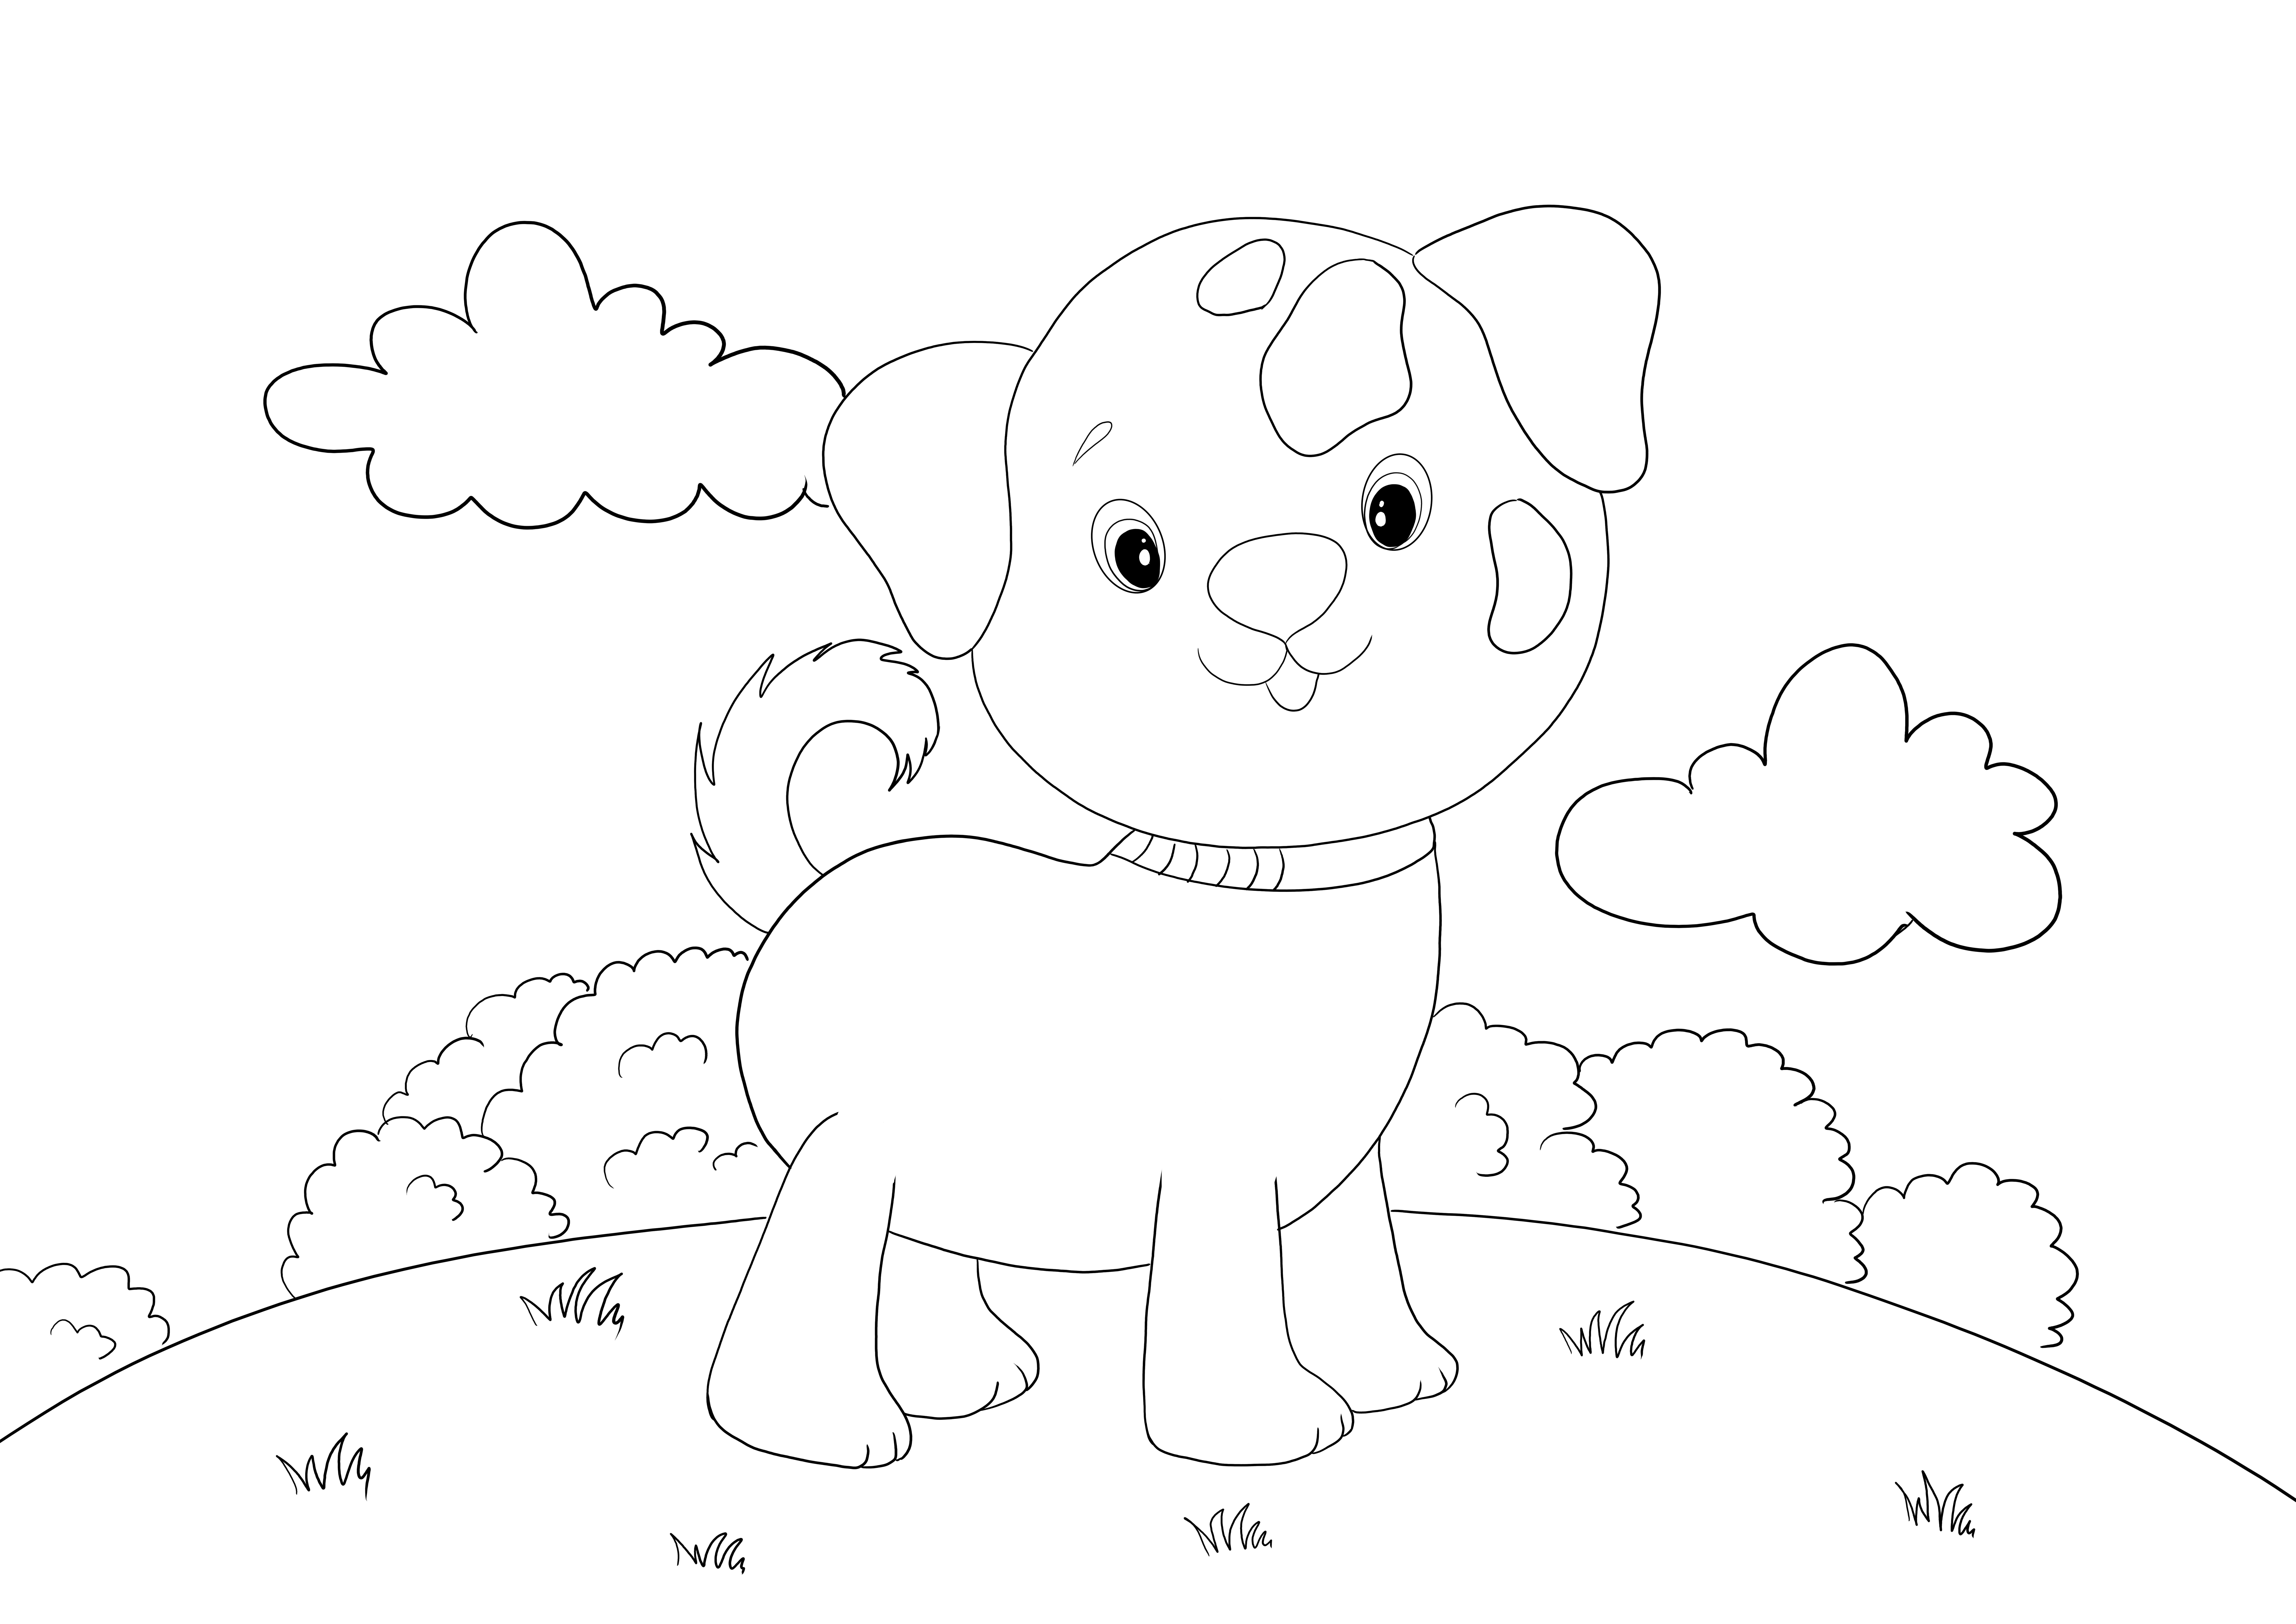 Her yaştan çocuklar için boyaması kolay sevimli köpek yavrusu